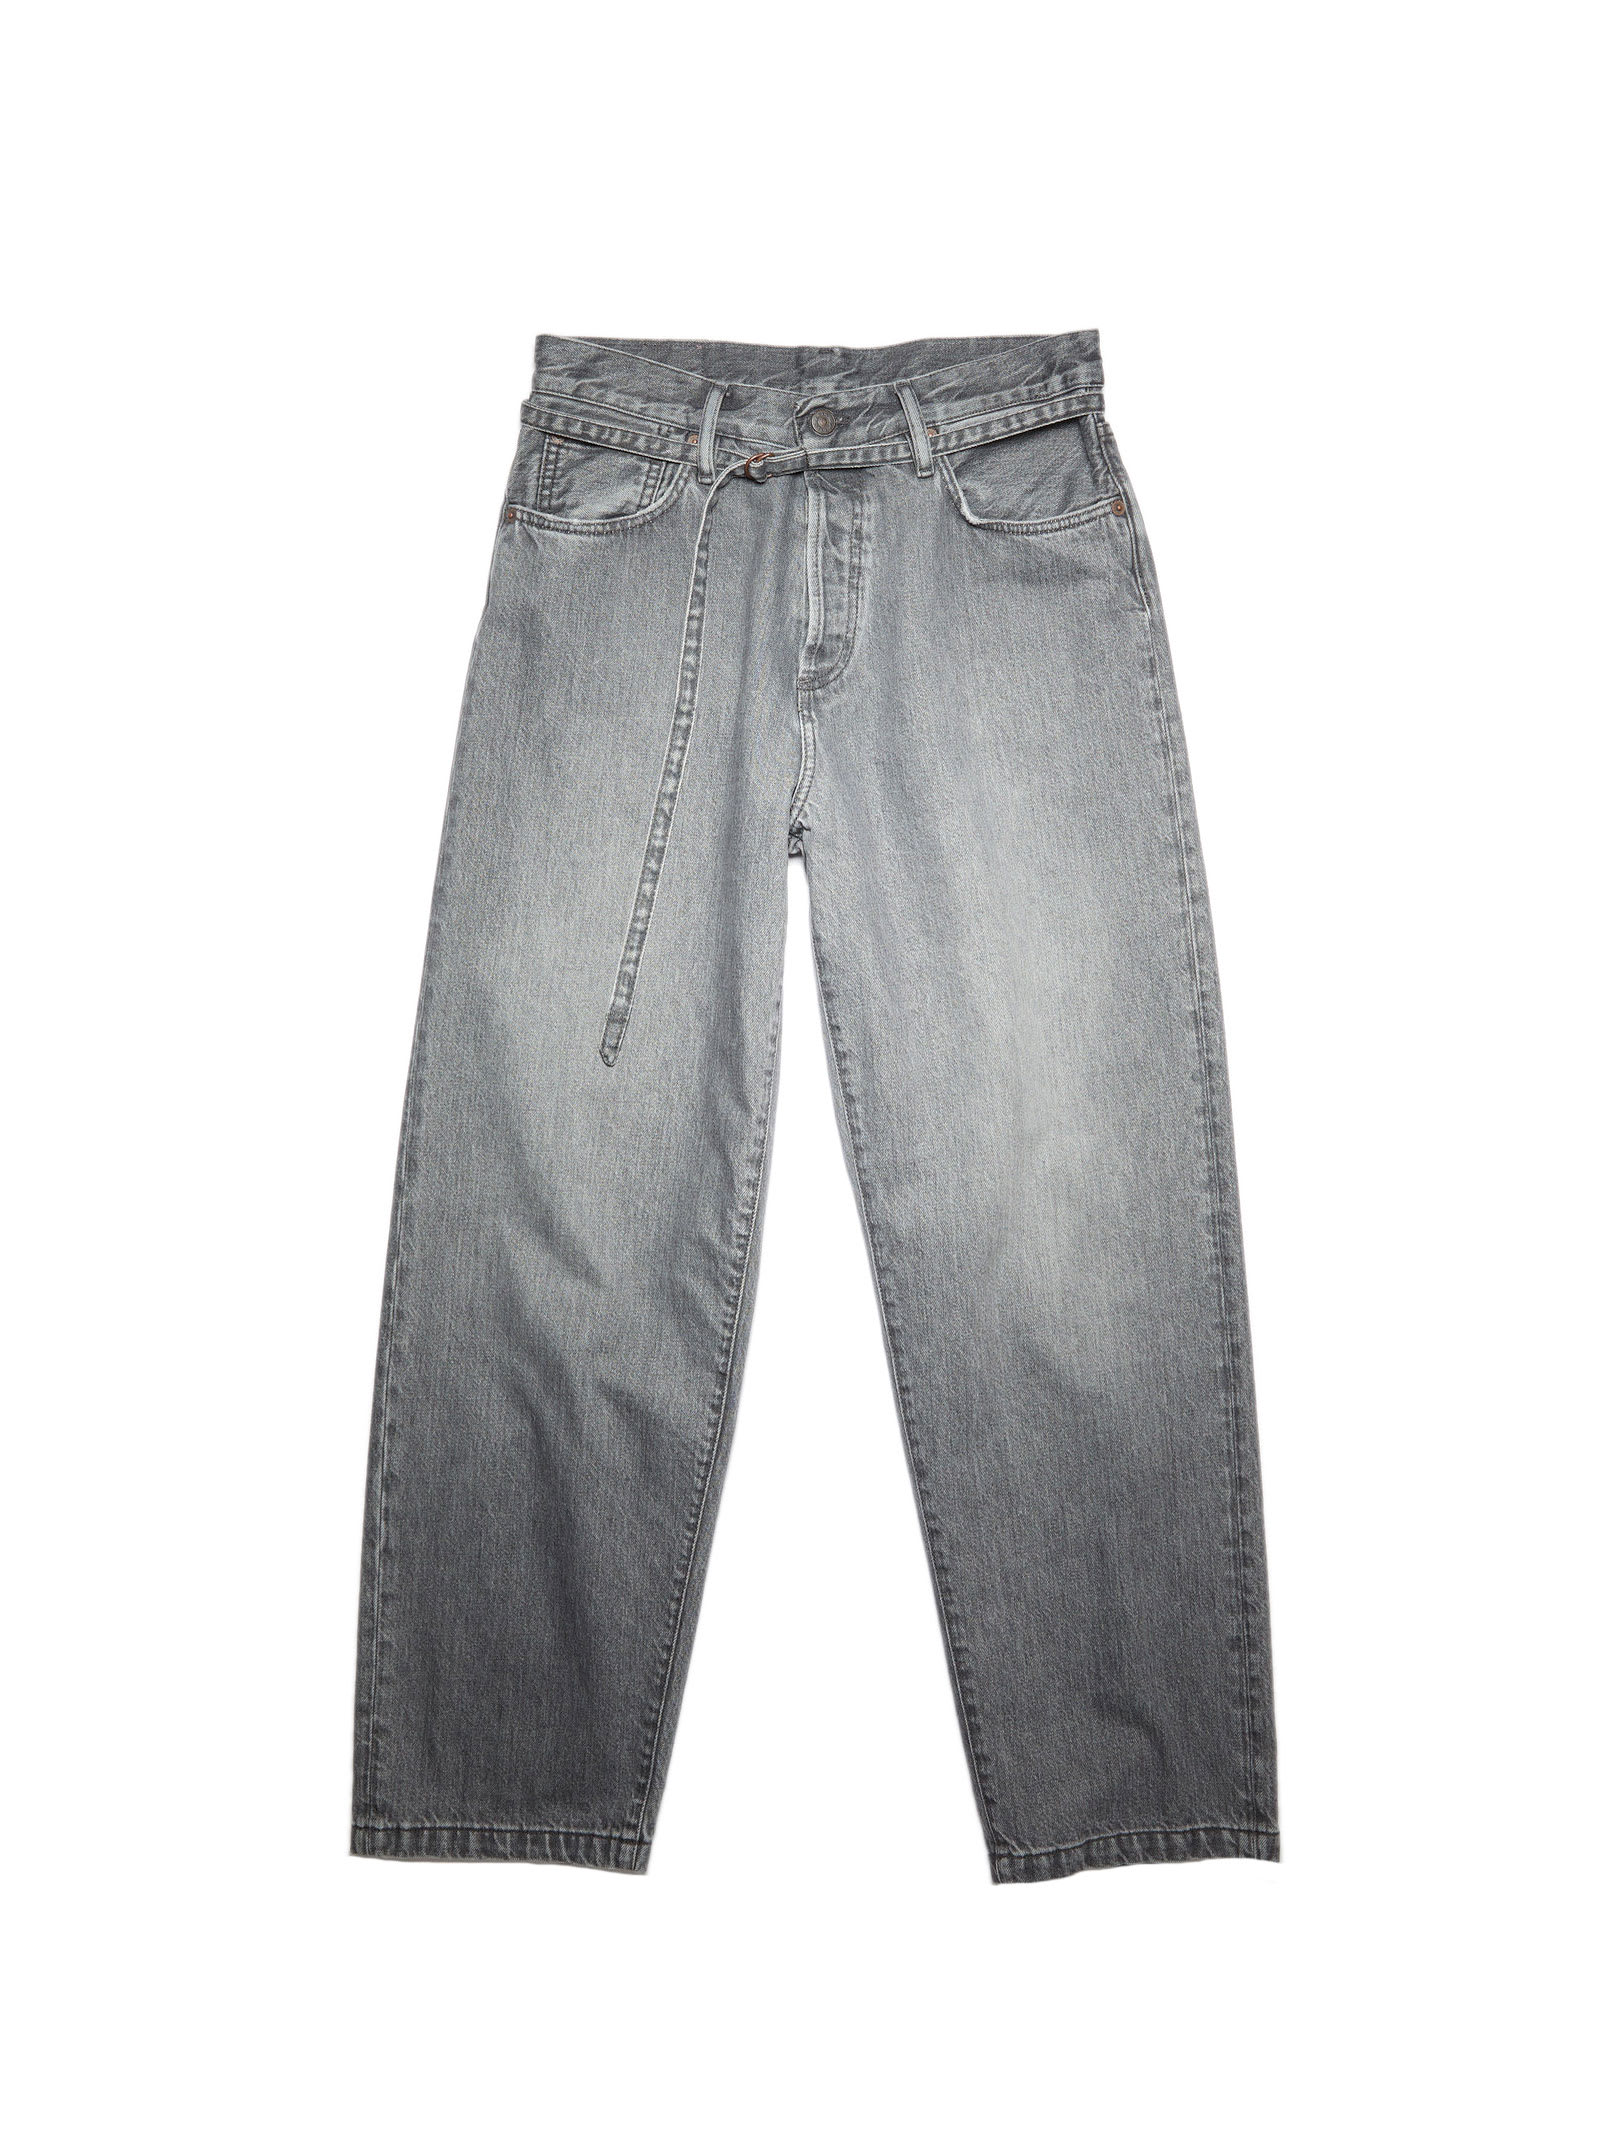 Acne Studios Jeans In Denim Grey